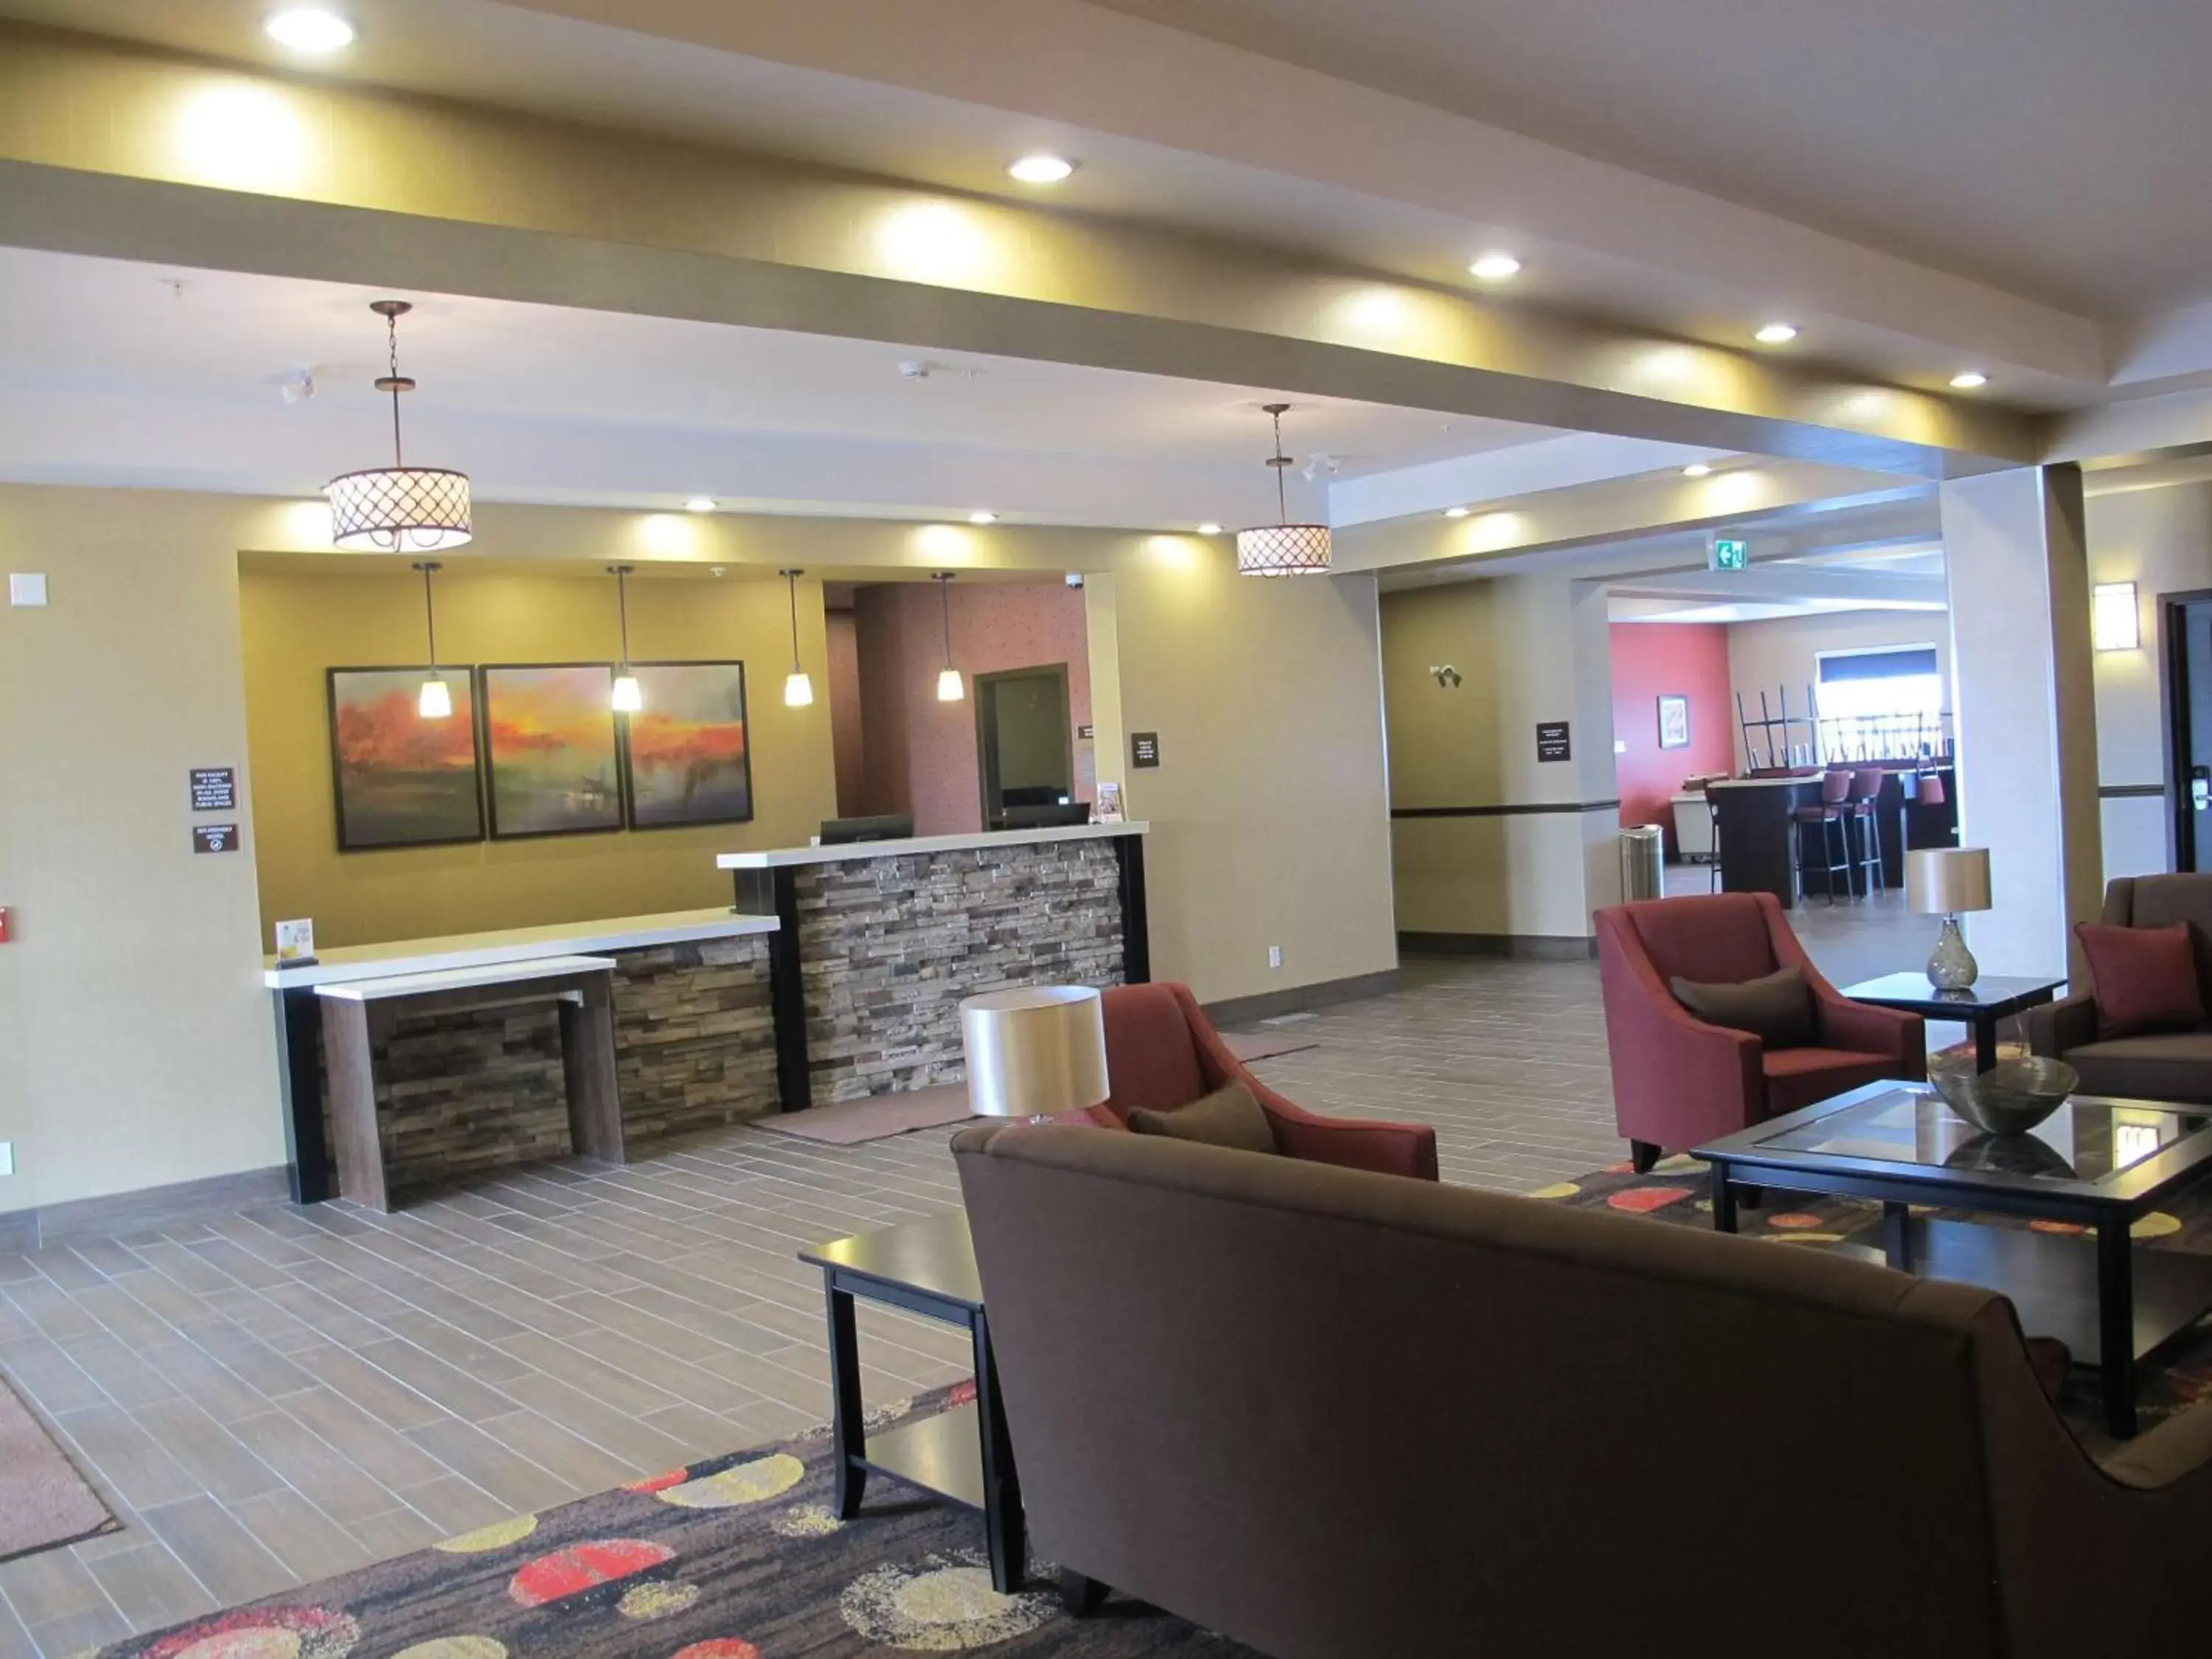 Lobby or reception, Lobby/Reception in Best Western Plus Kindersley Hotel